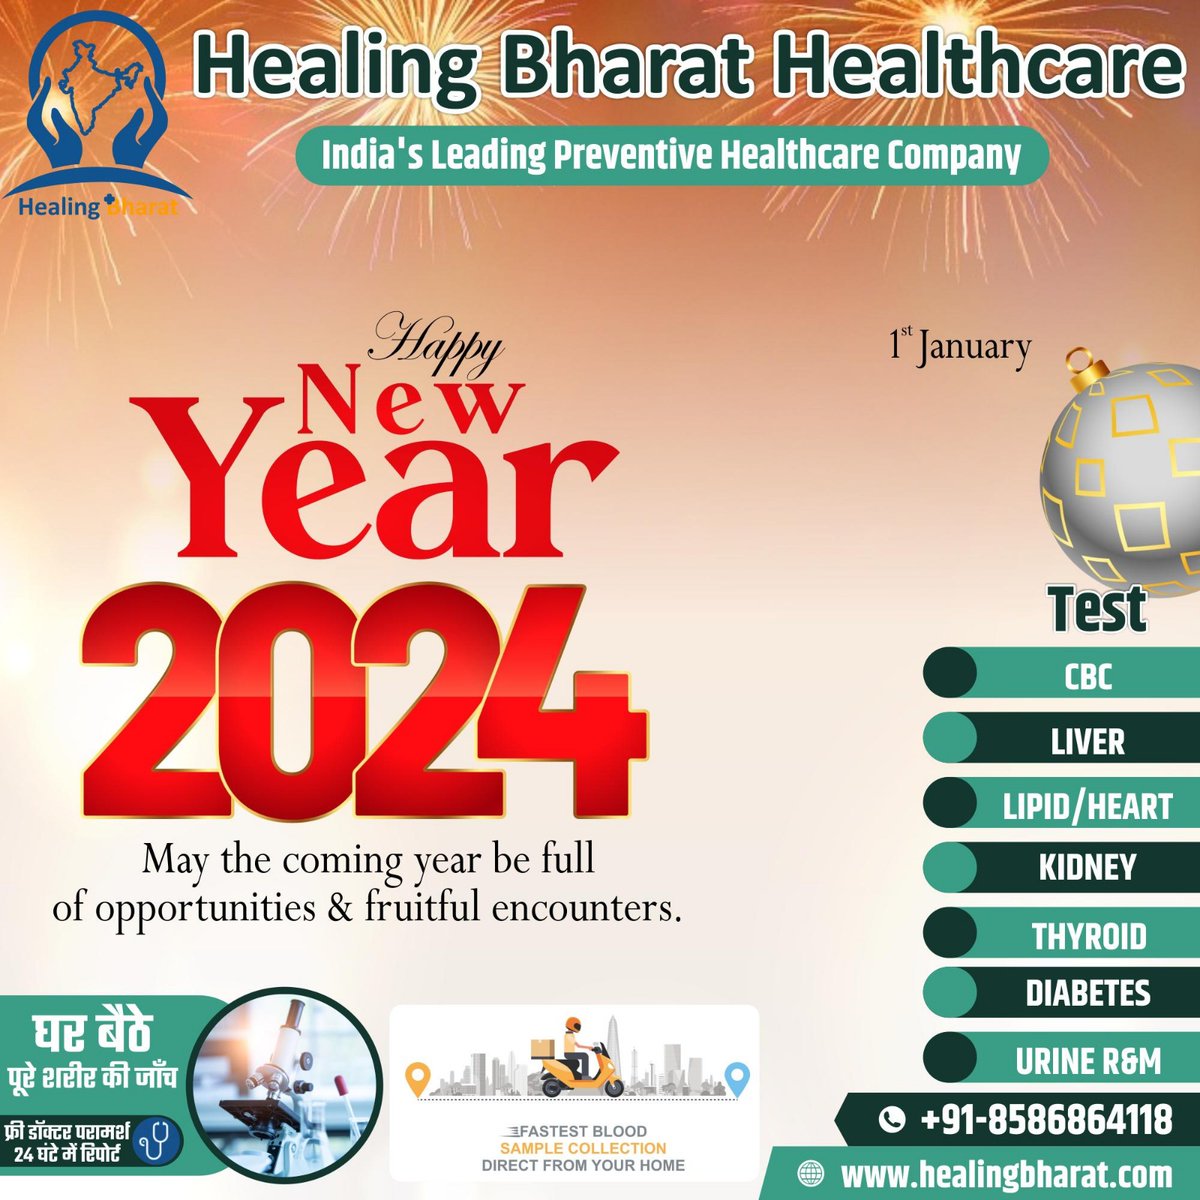 Happy New Year 2024 from Healing Bharat family!

#happynewyear2024 #happynewyear2024wishes #welcome2024 #happynewyear24 #HealingBharat